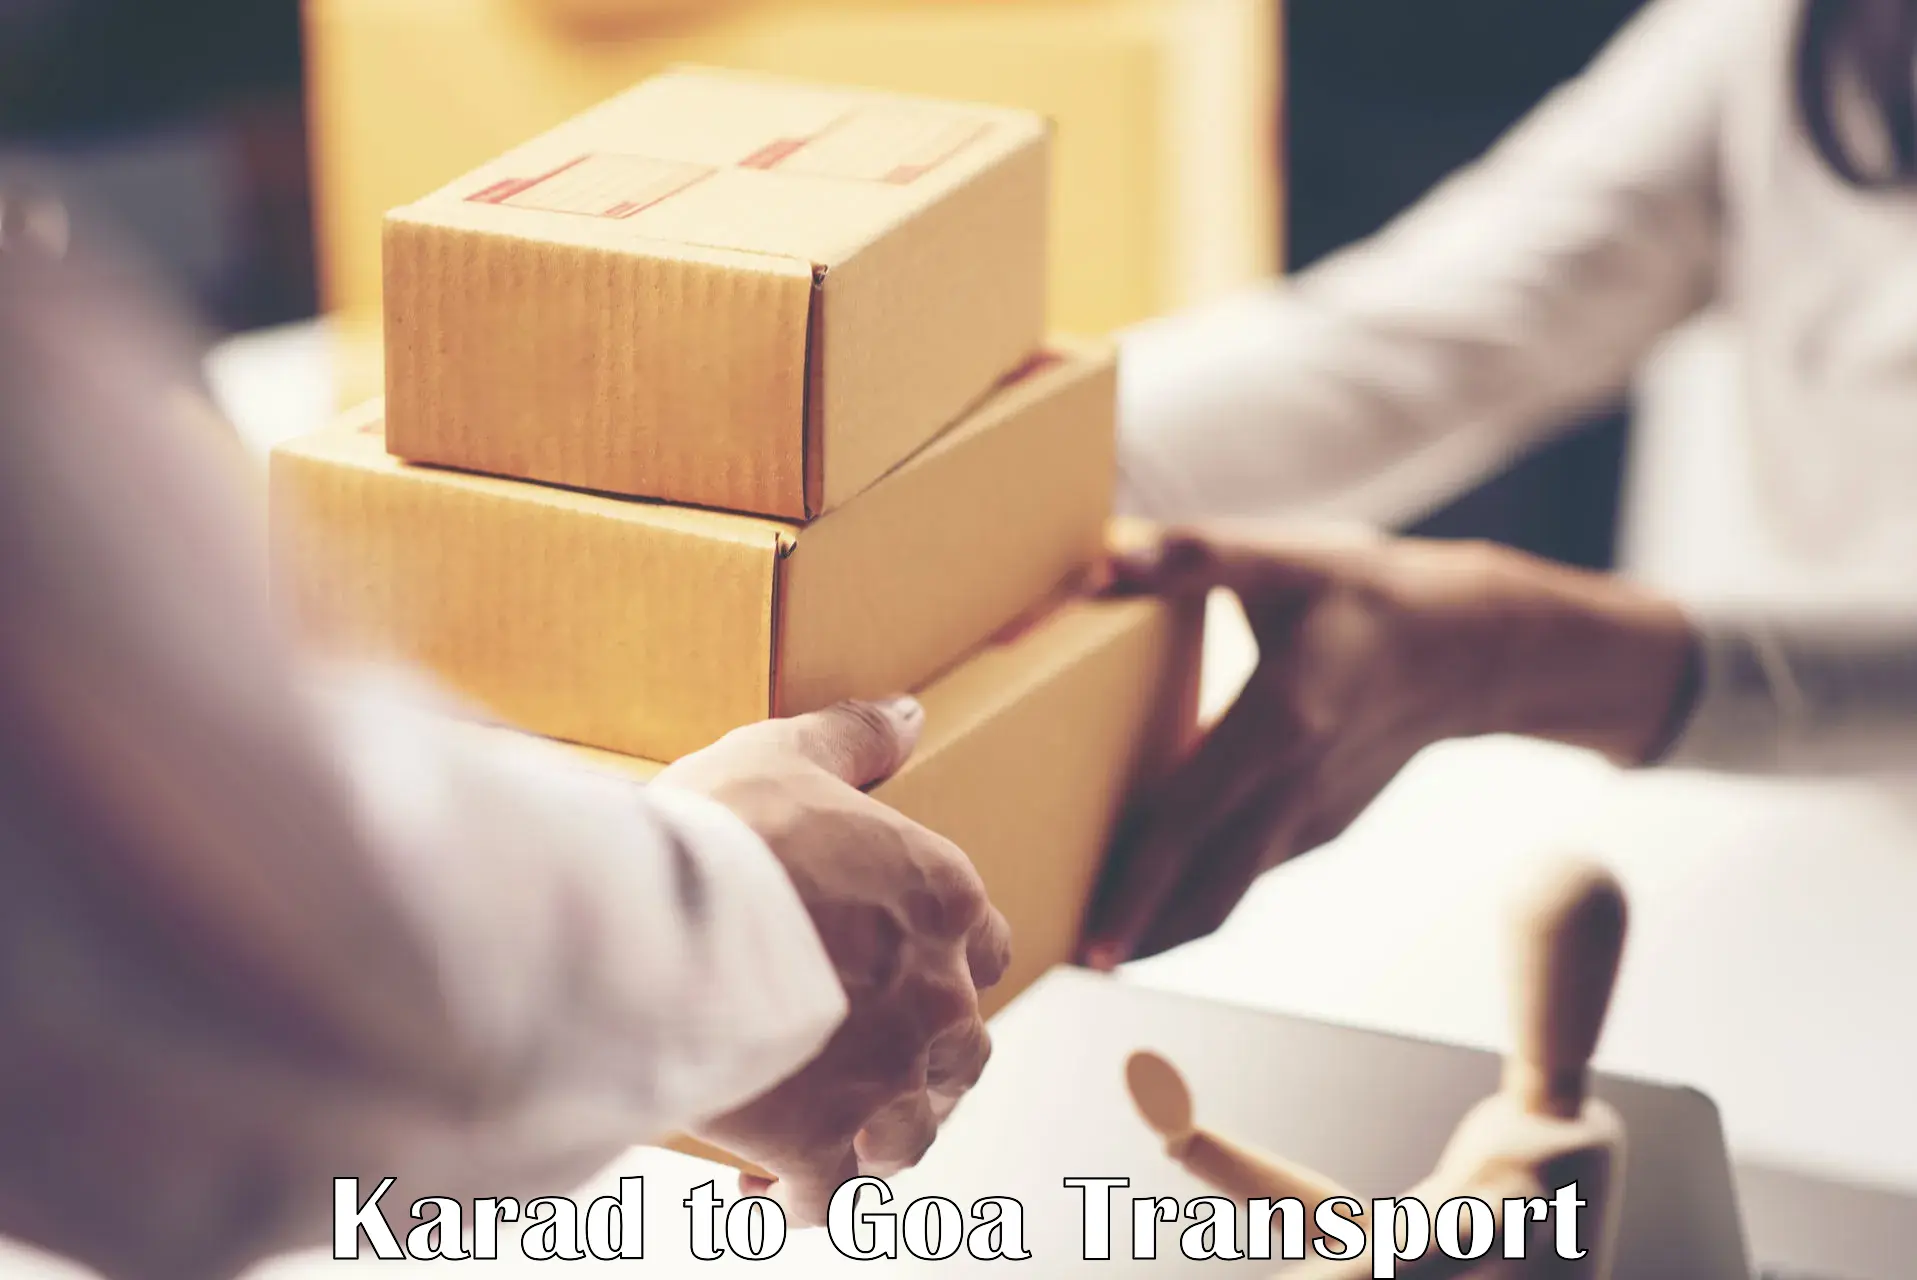 Container transportation services Karad to Mormugao Port